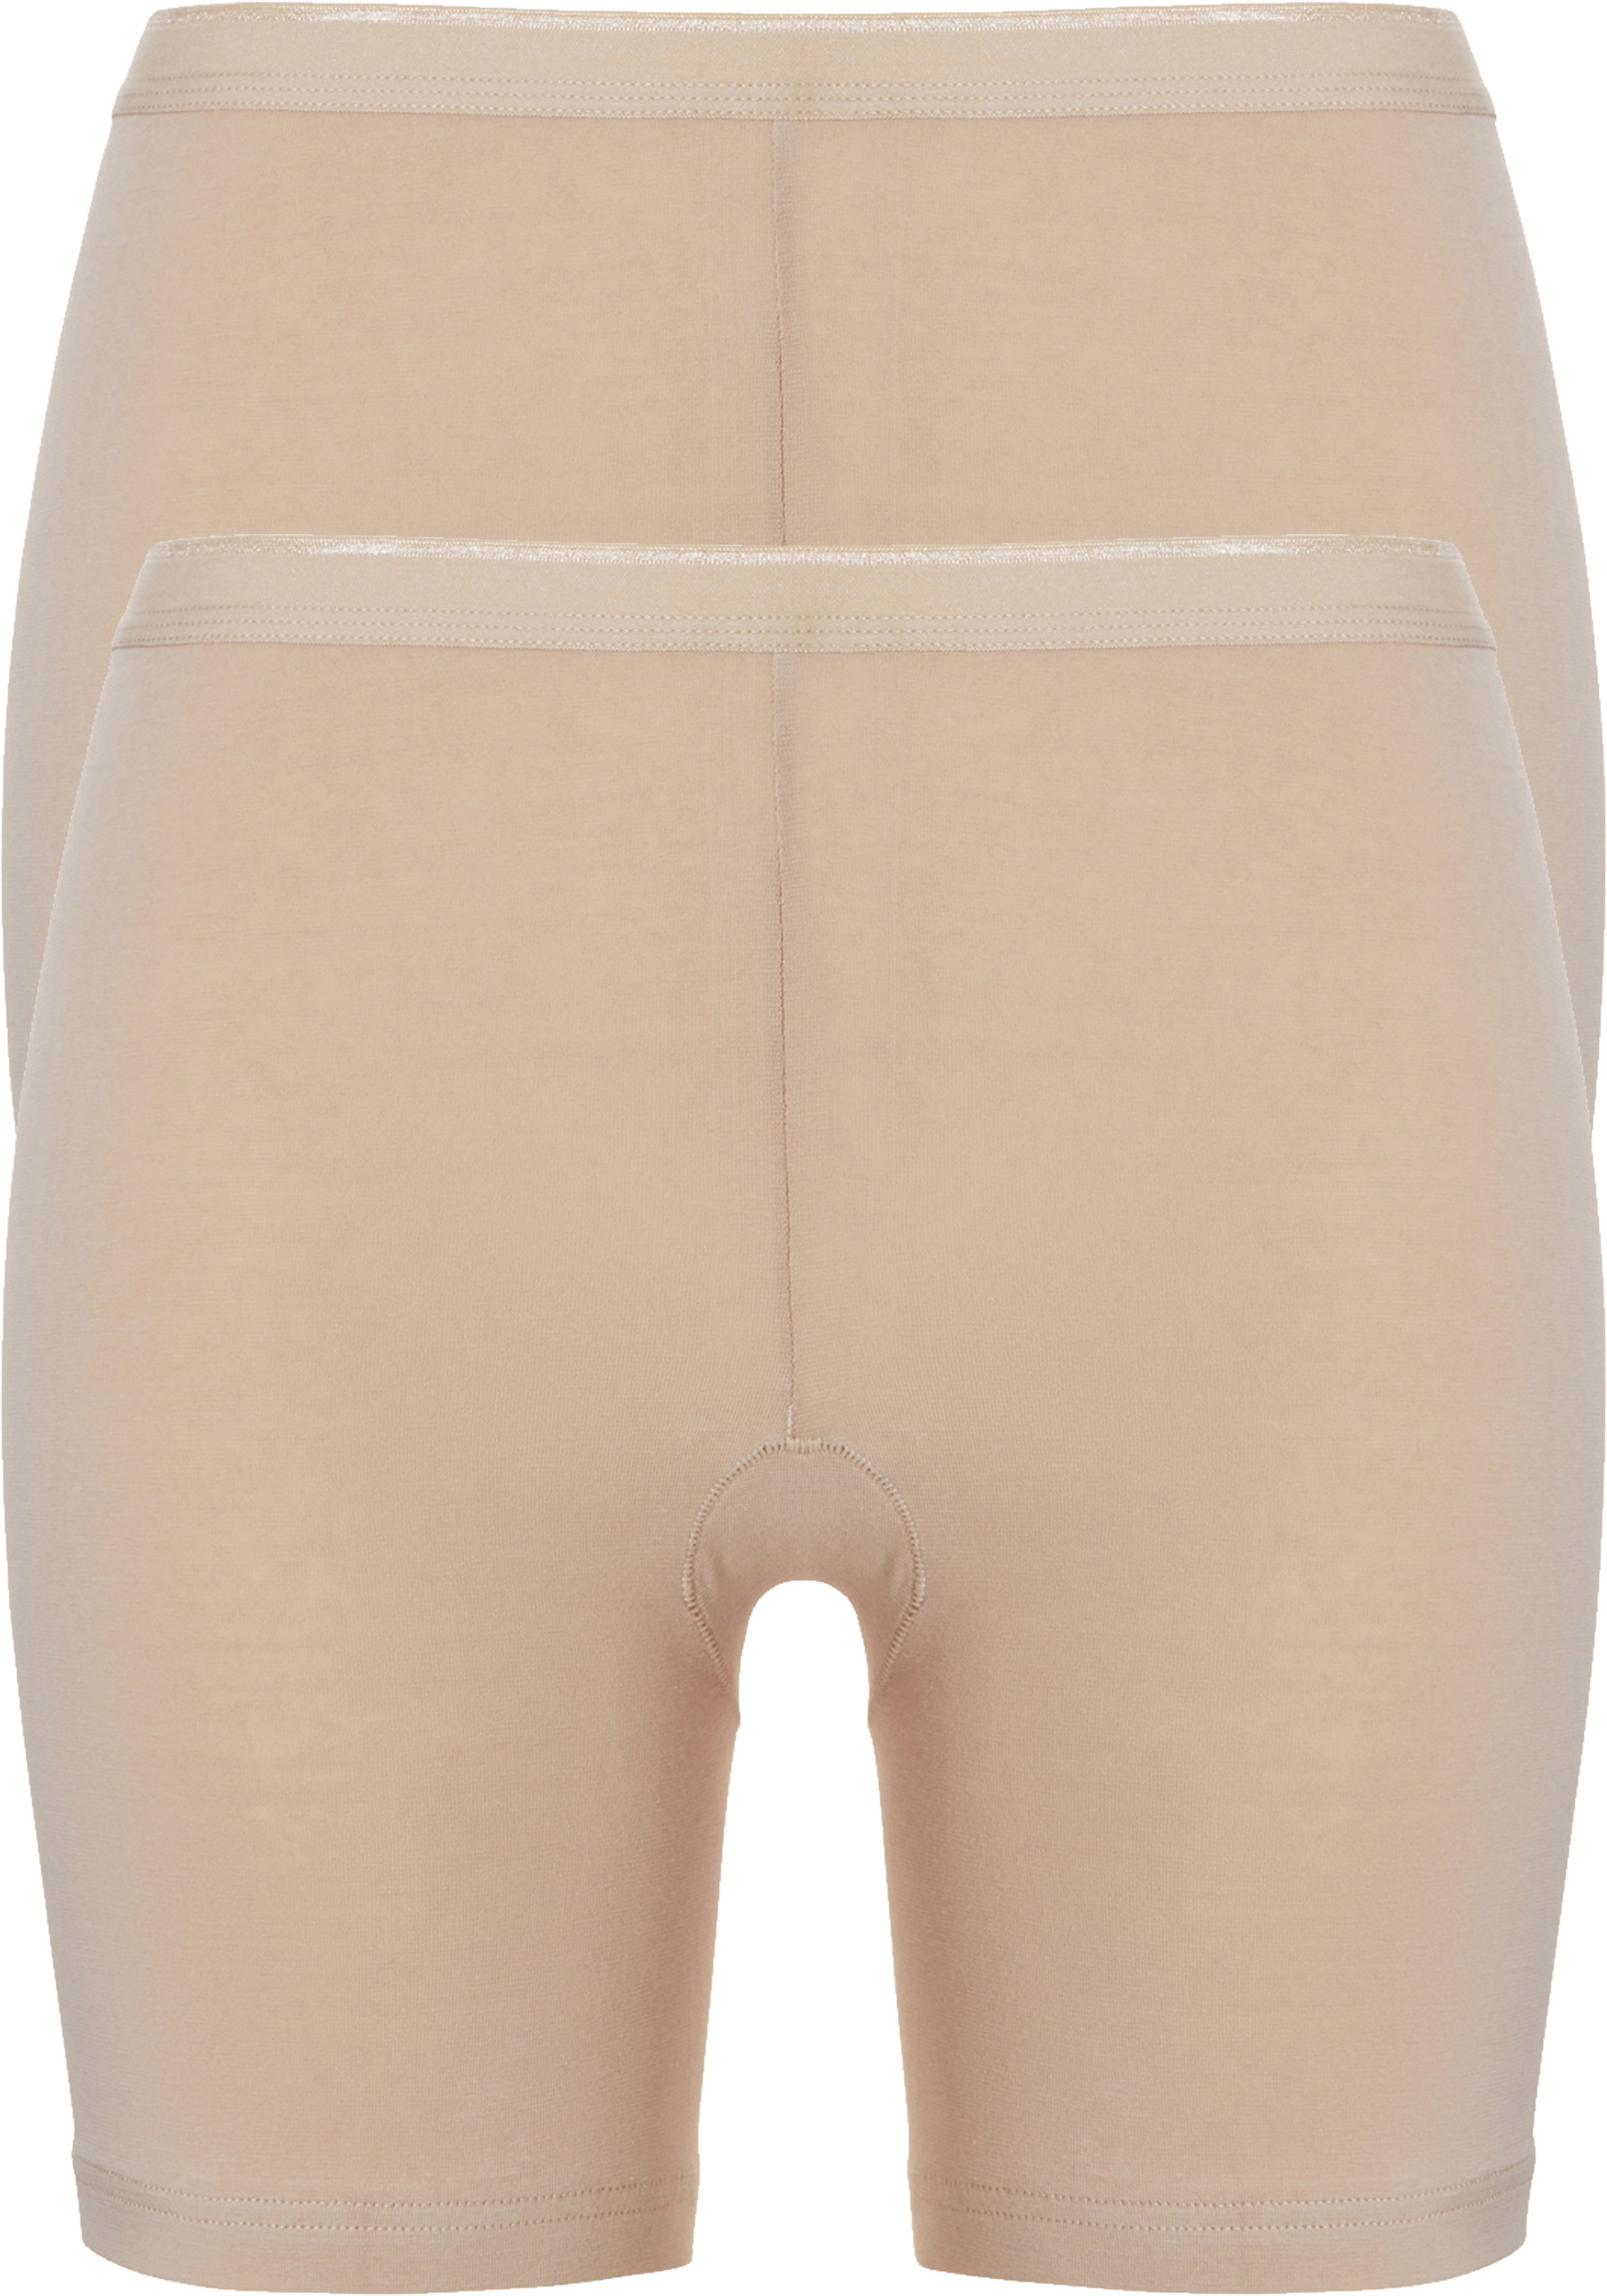 TEN CATE Basic women pants  (2-pack), dames slips lange pijp met middelhoge taile, huidskleur